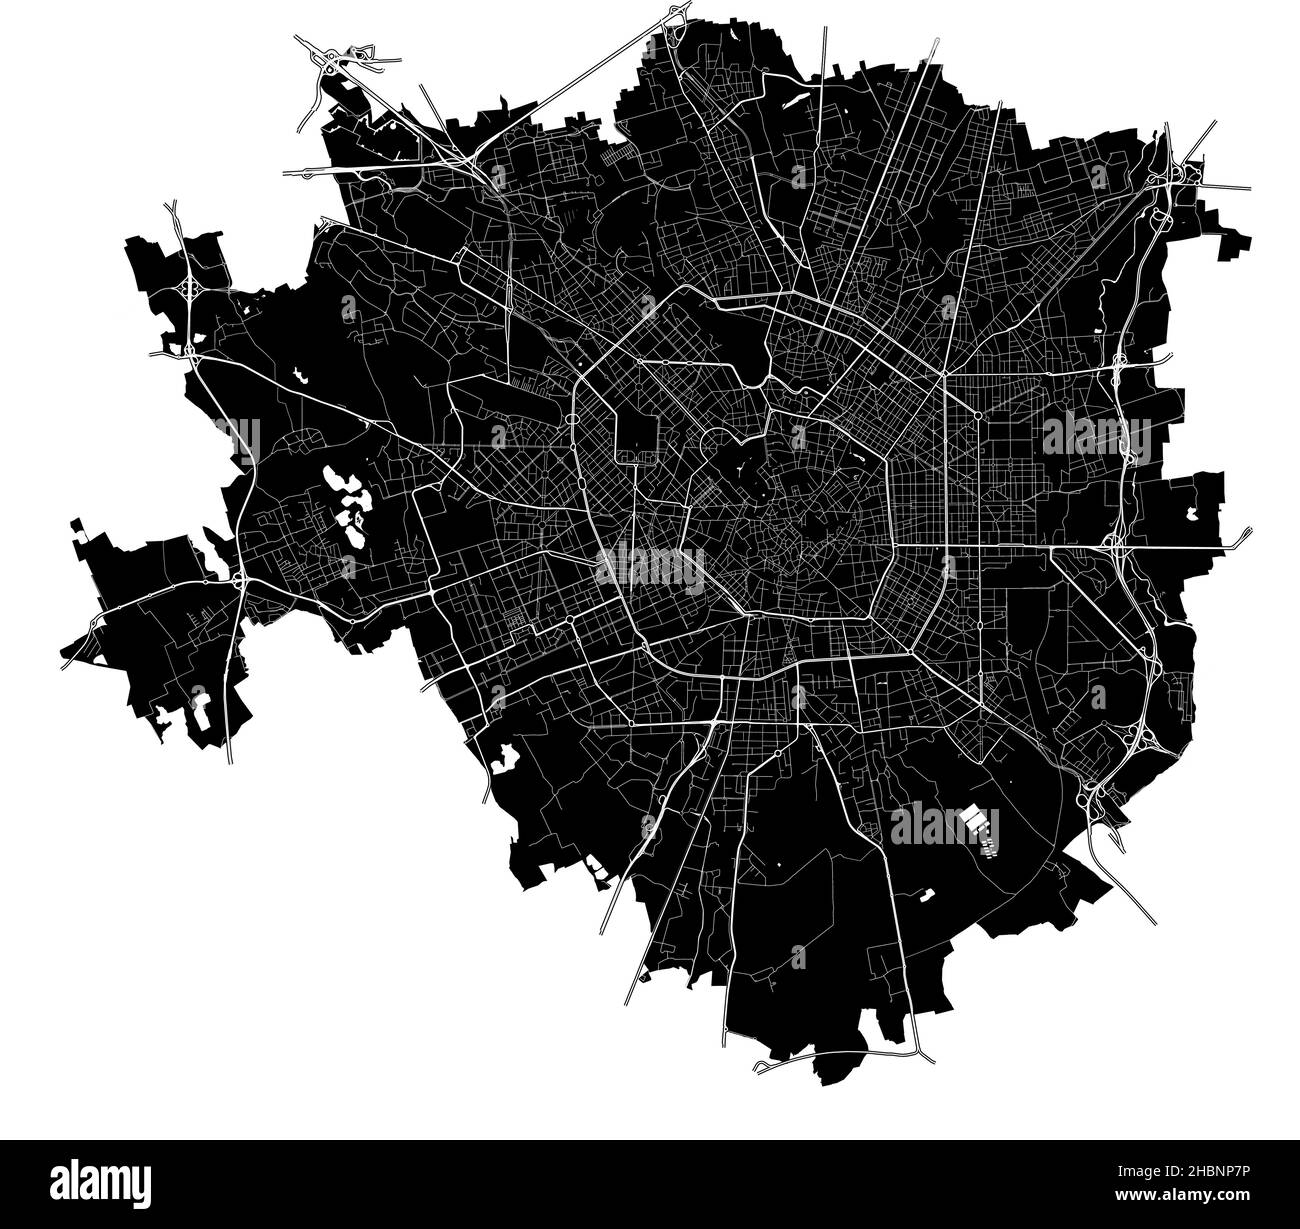 Milano, Italia, mappa vettoriale ad alta risoluzione con confini della città e percorsi modificabili. La mappa della città è stata disegnata con aree bianche e linee per le strade principali, s Illustrazione Vettoriale